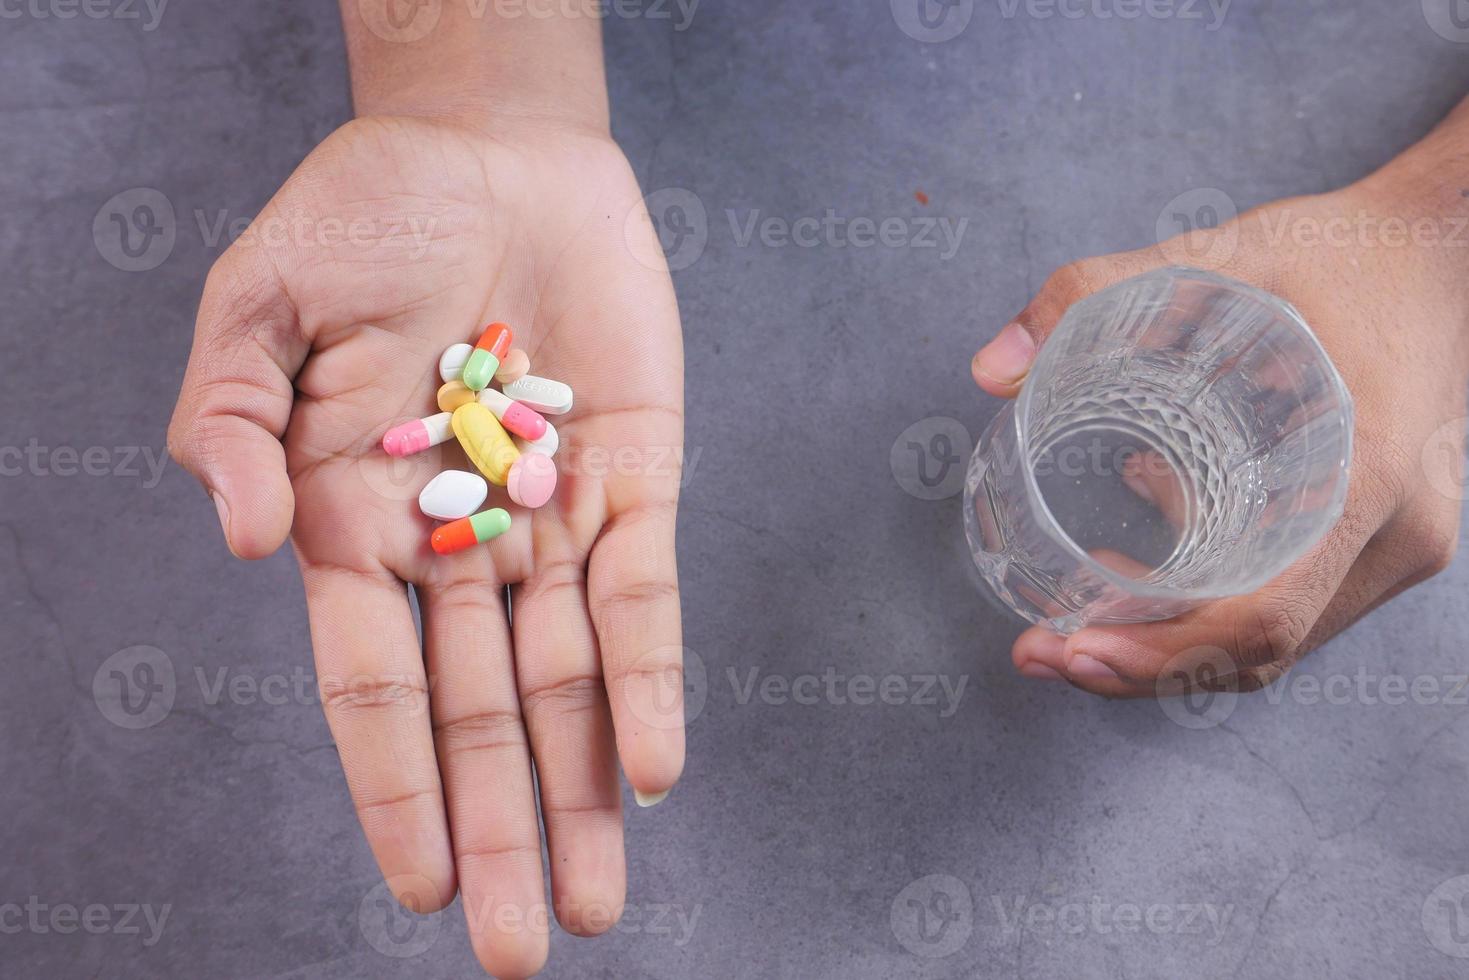 mano sosteniendo pastillas y un vaso de agua foto